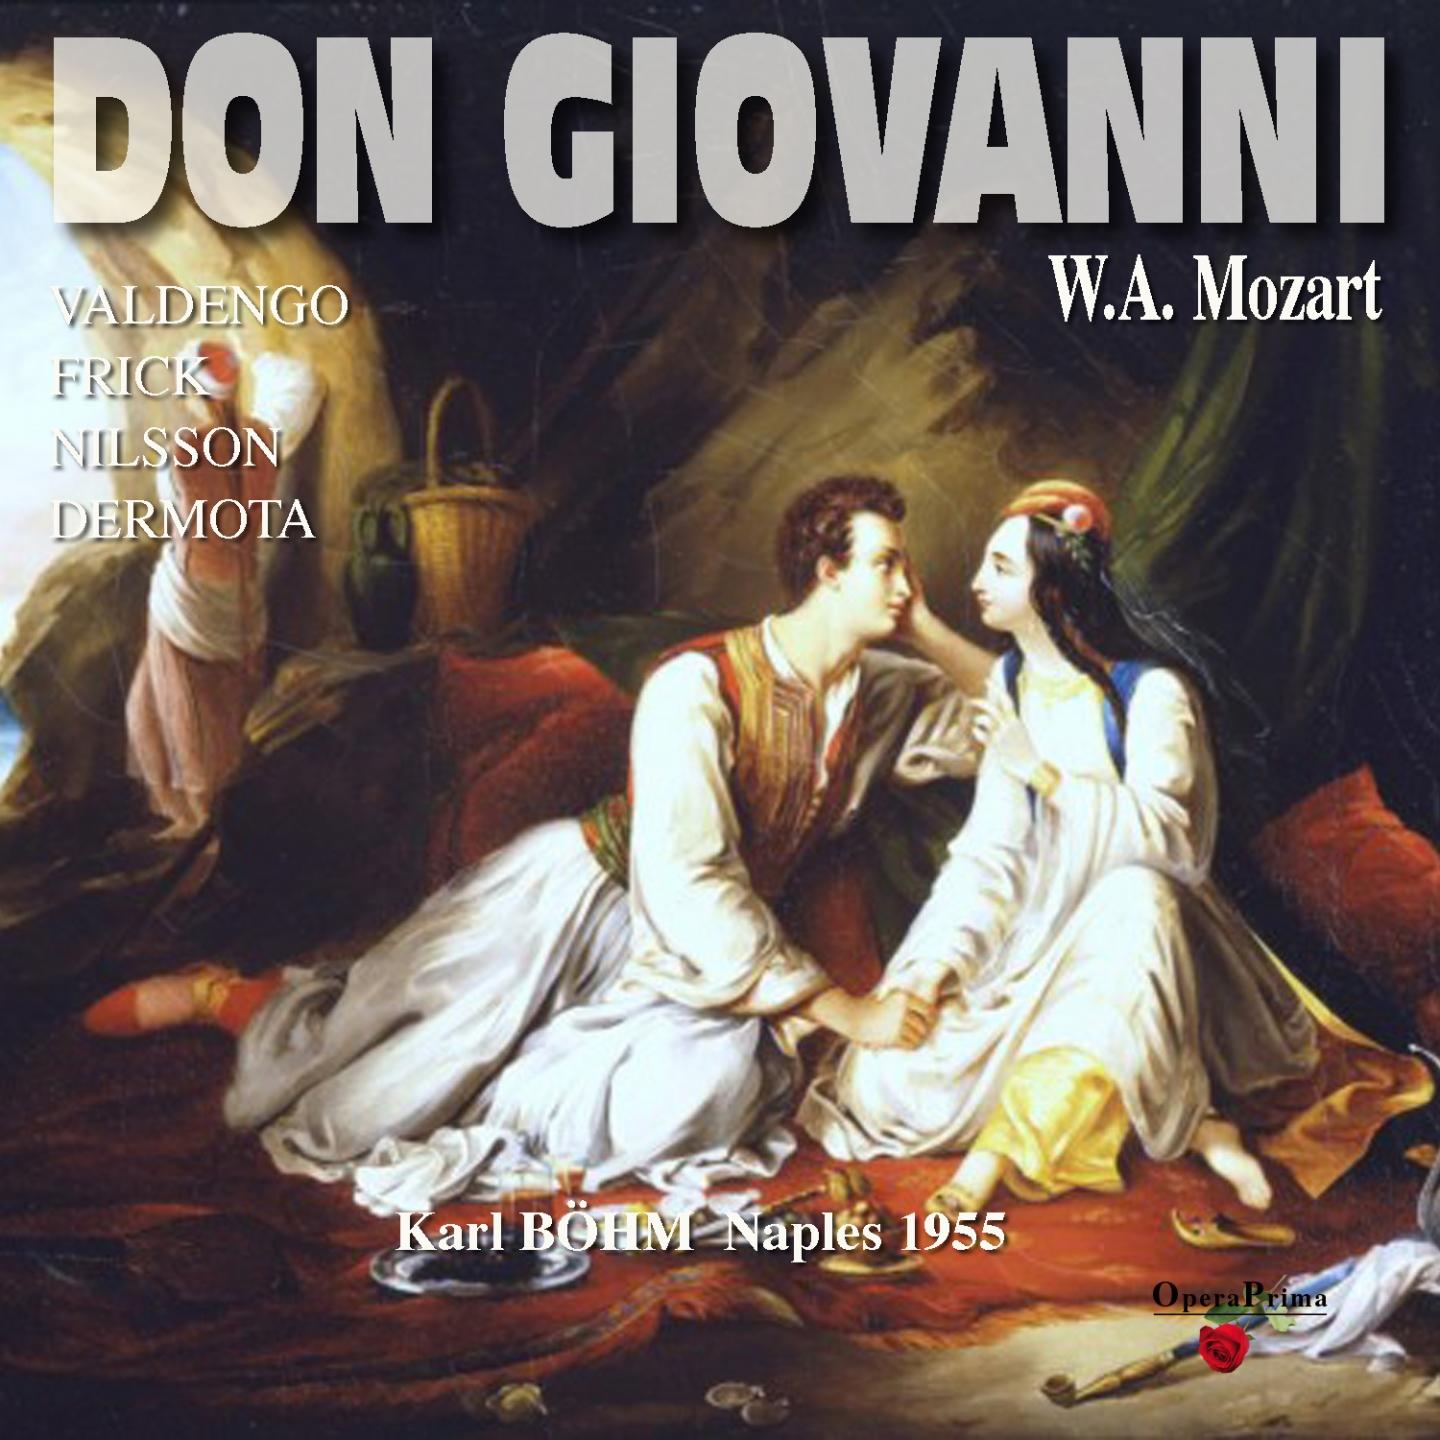 Don Giovanni: Act II  " Ah dov' e il perfido"